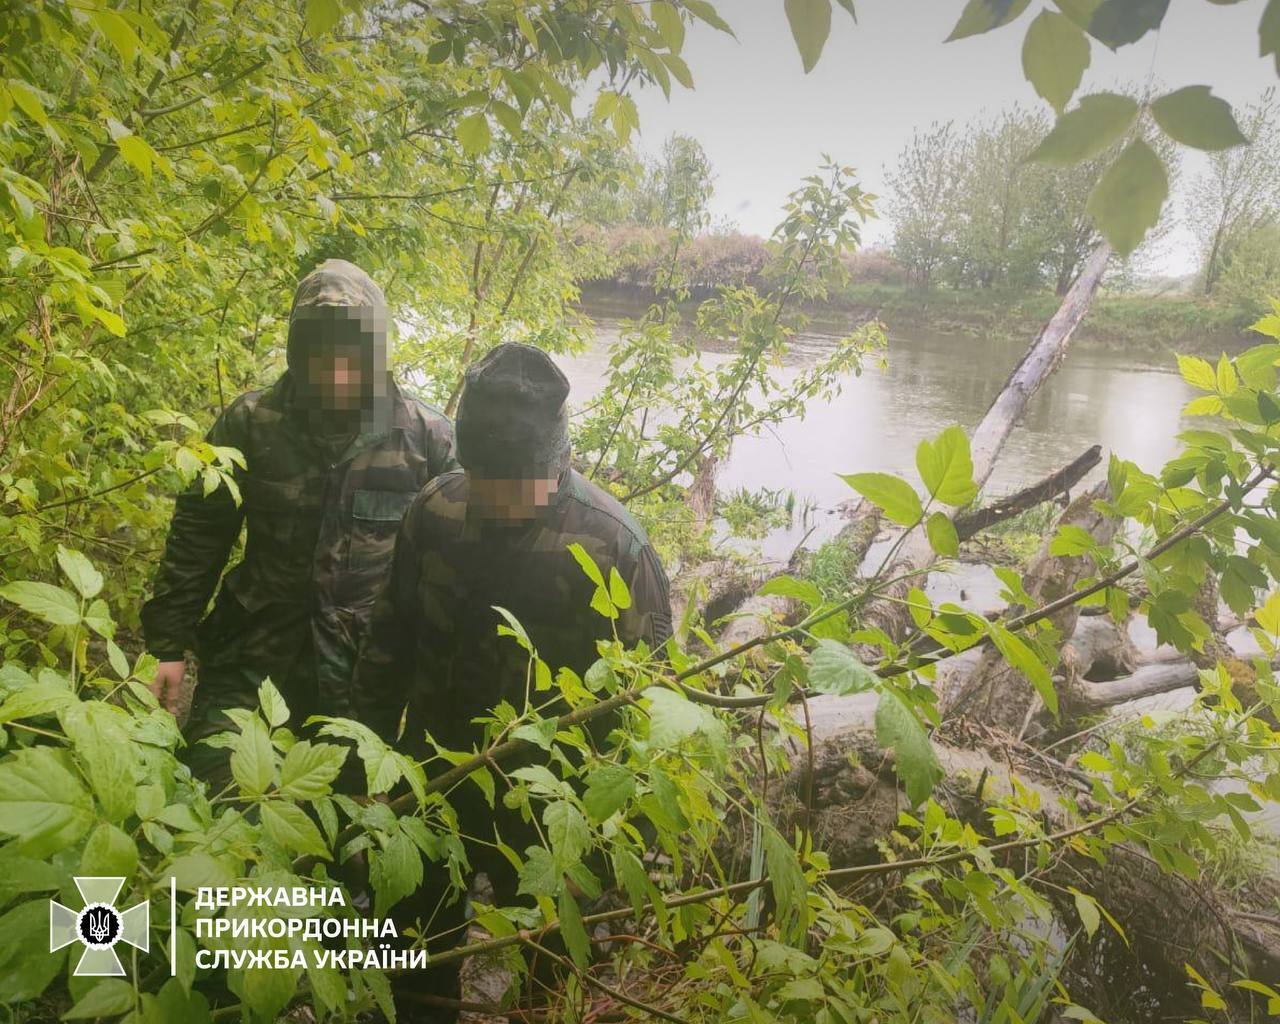 Не знайшли роботи в Німеччині: двоє чоловіків перепливли річку, аби повернутись в Україну. Фото